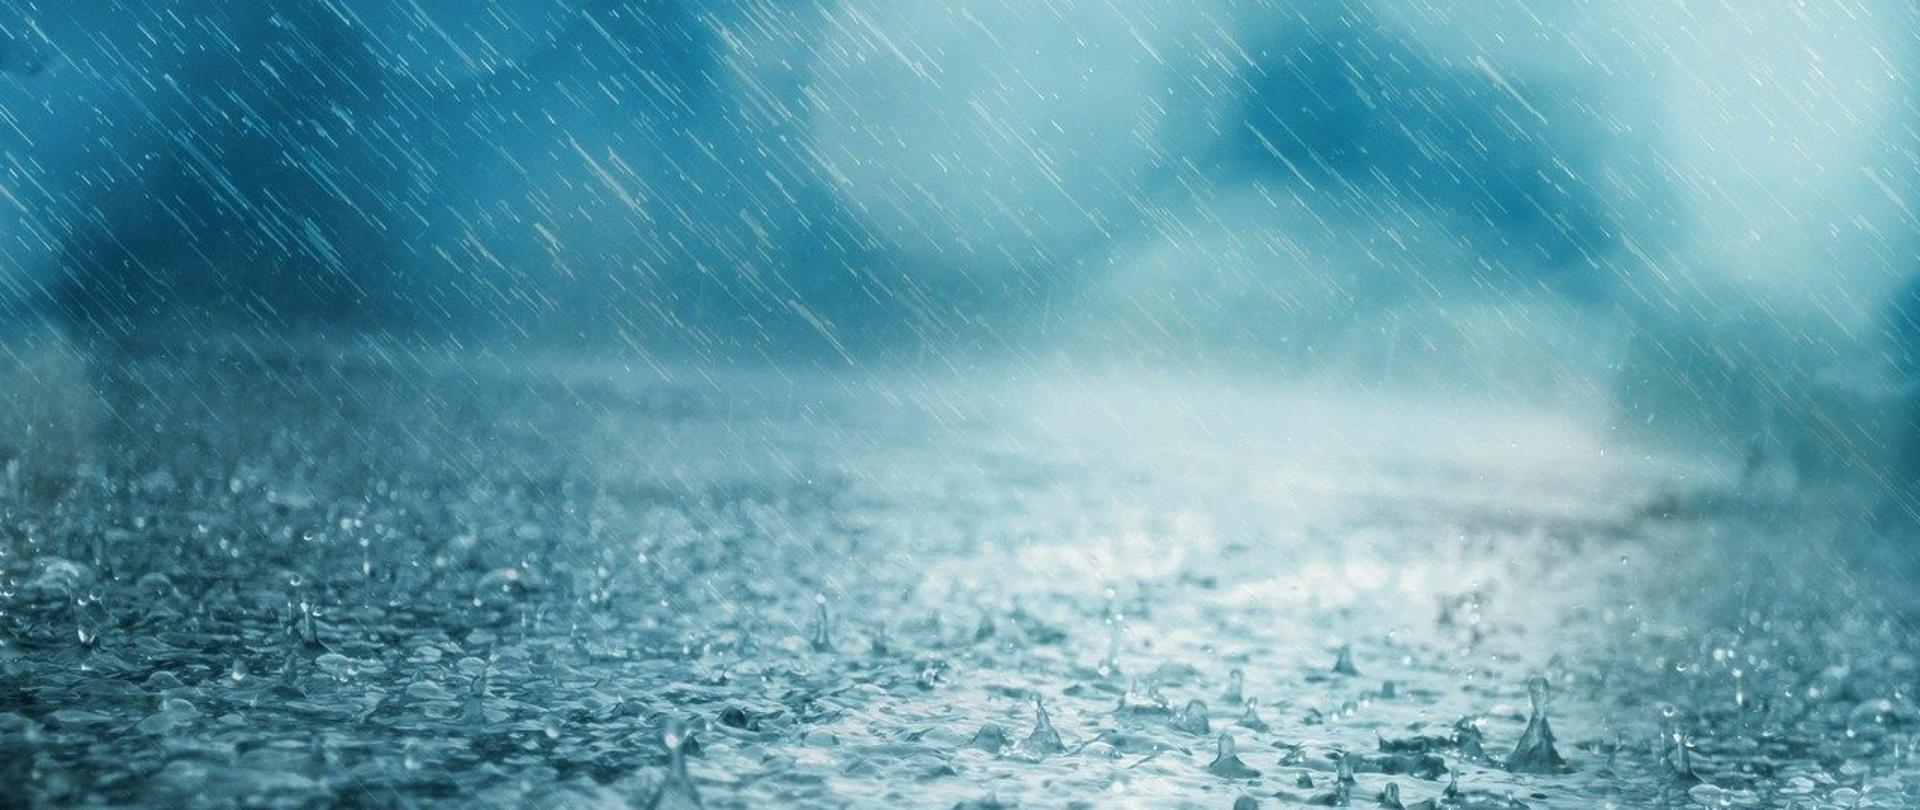 Zdjęcie przedstawia ulewny deszcz padający na jezdnię.